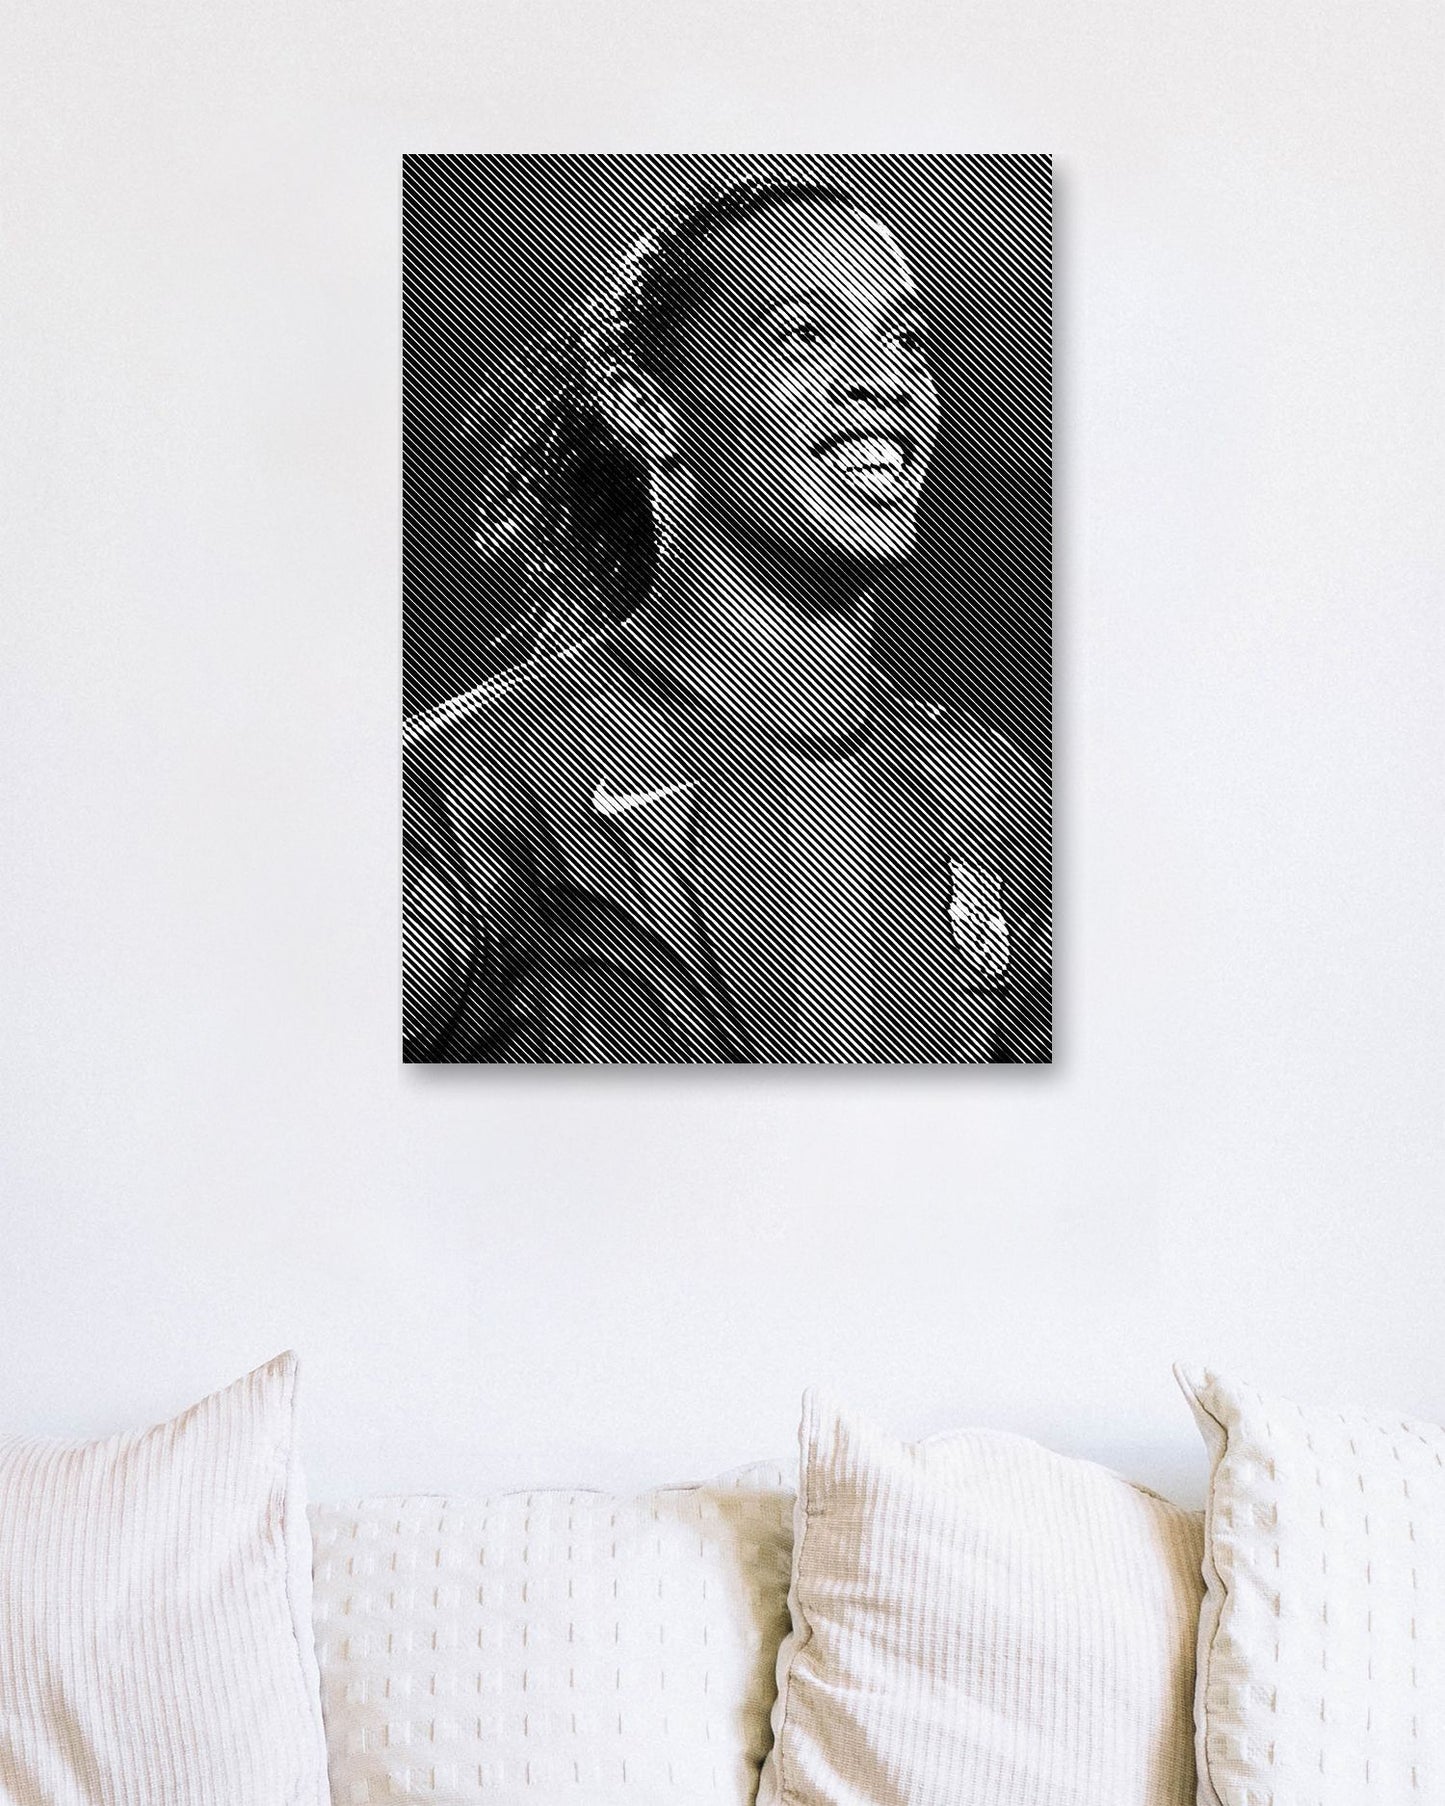 Ronaldinho - @Vecto